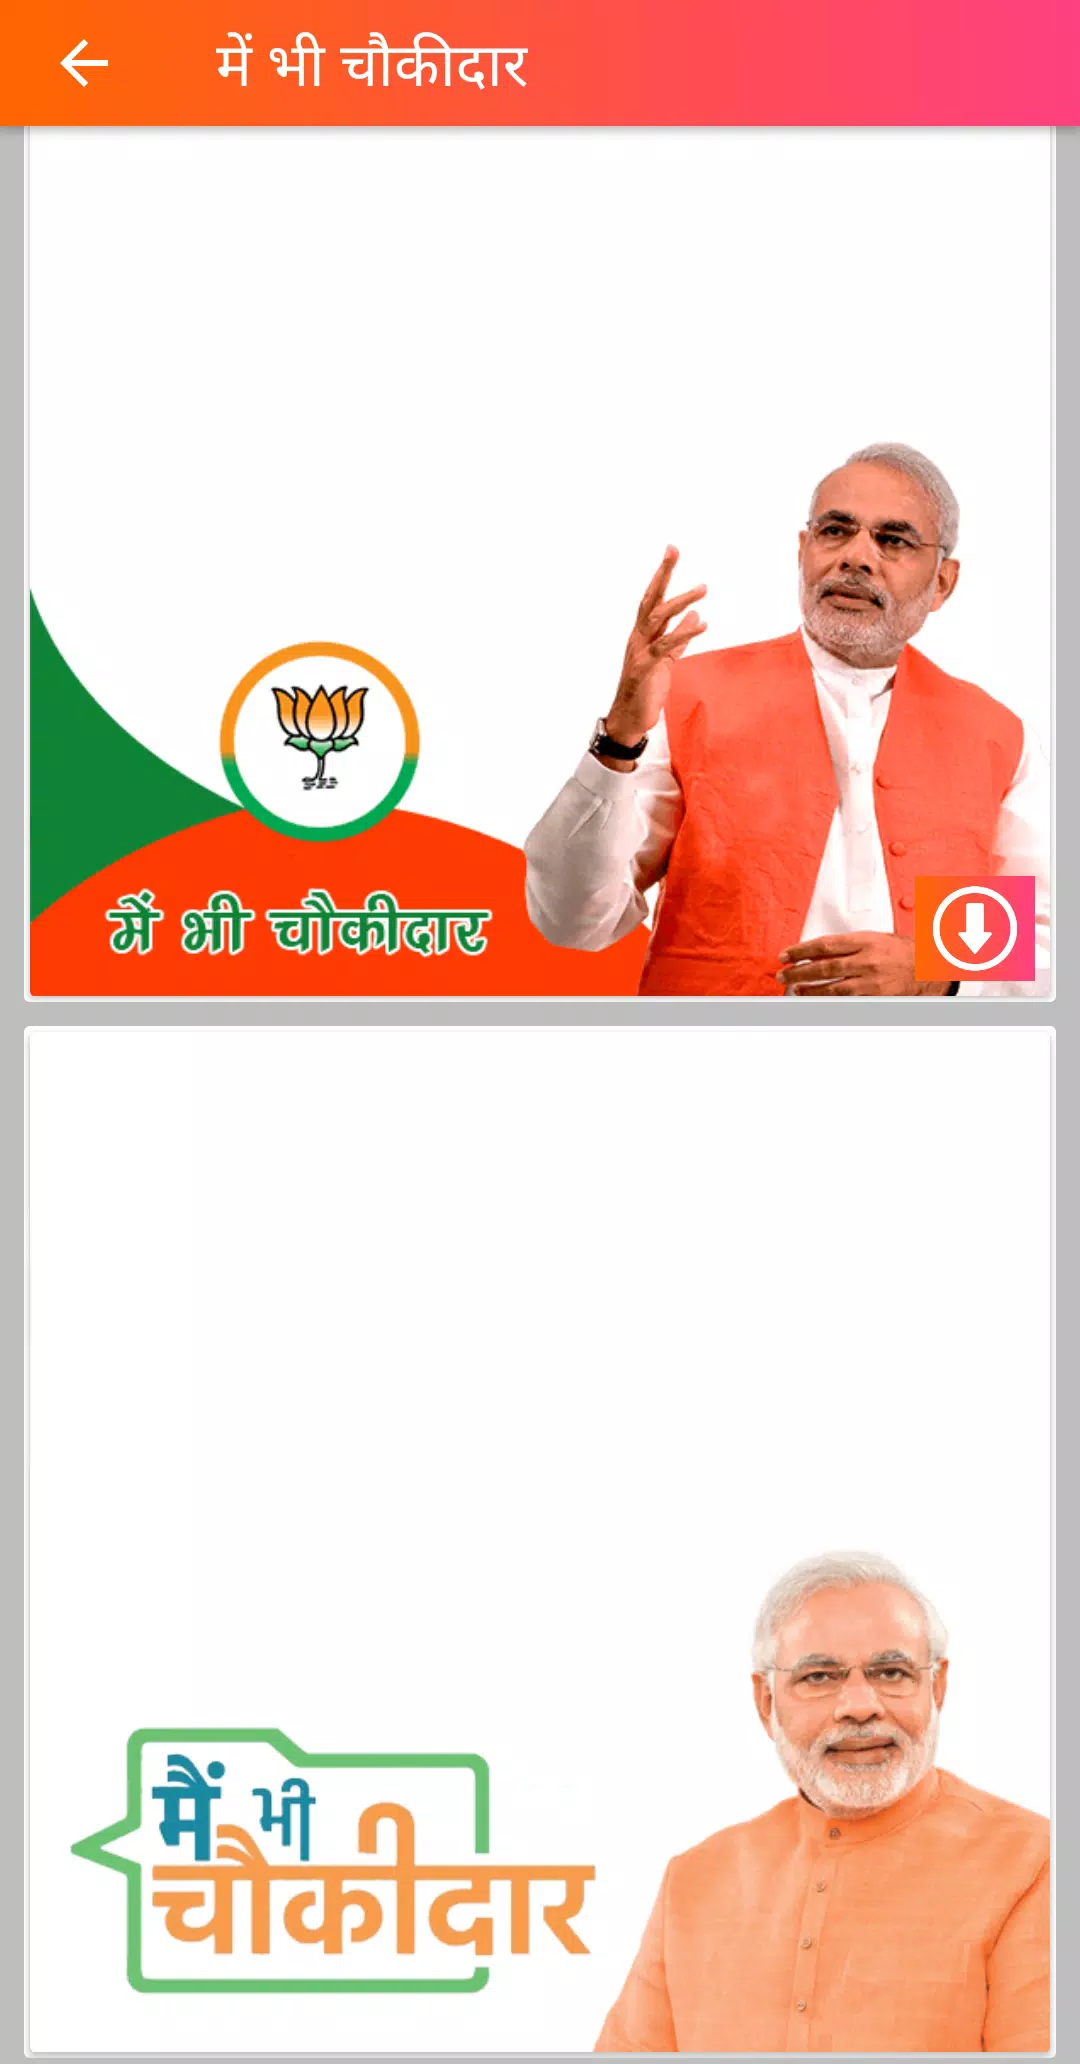 में भी चौकीदार हु - Main Bhi Chowkidar APK for Android Download